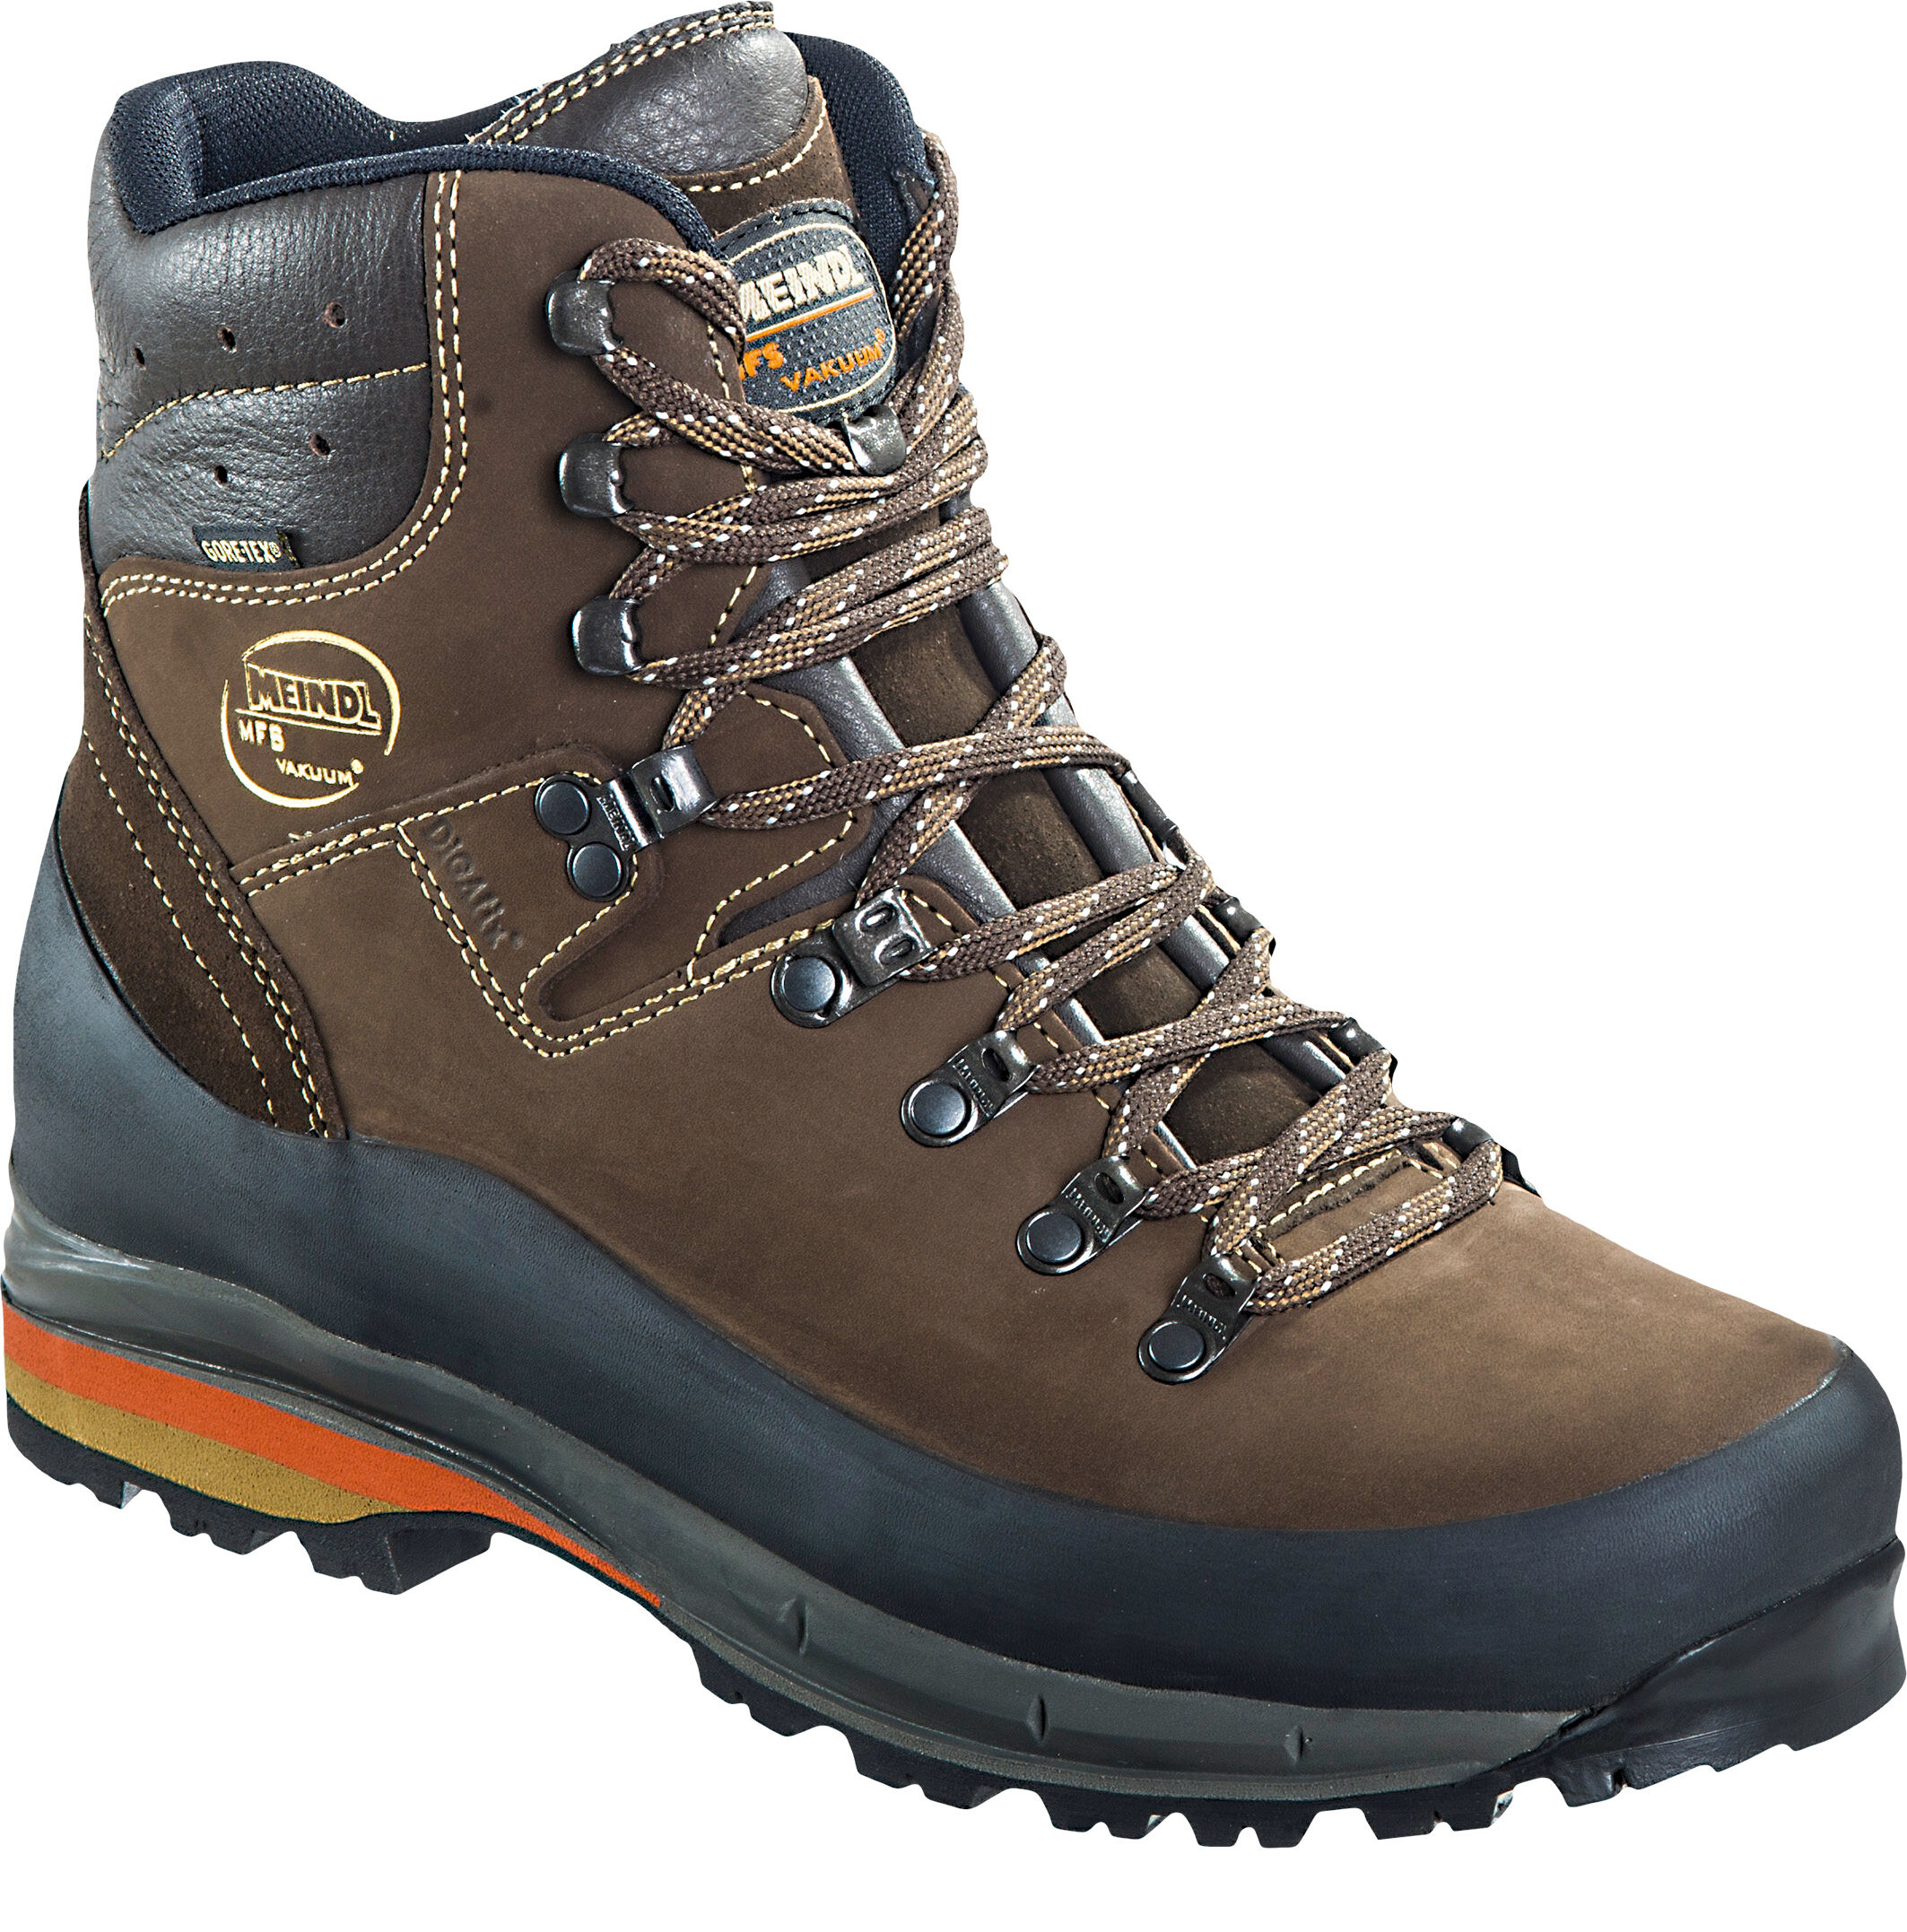 Meindl - Vakuum GTX - Hiking Boots - Men's